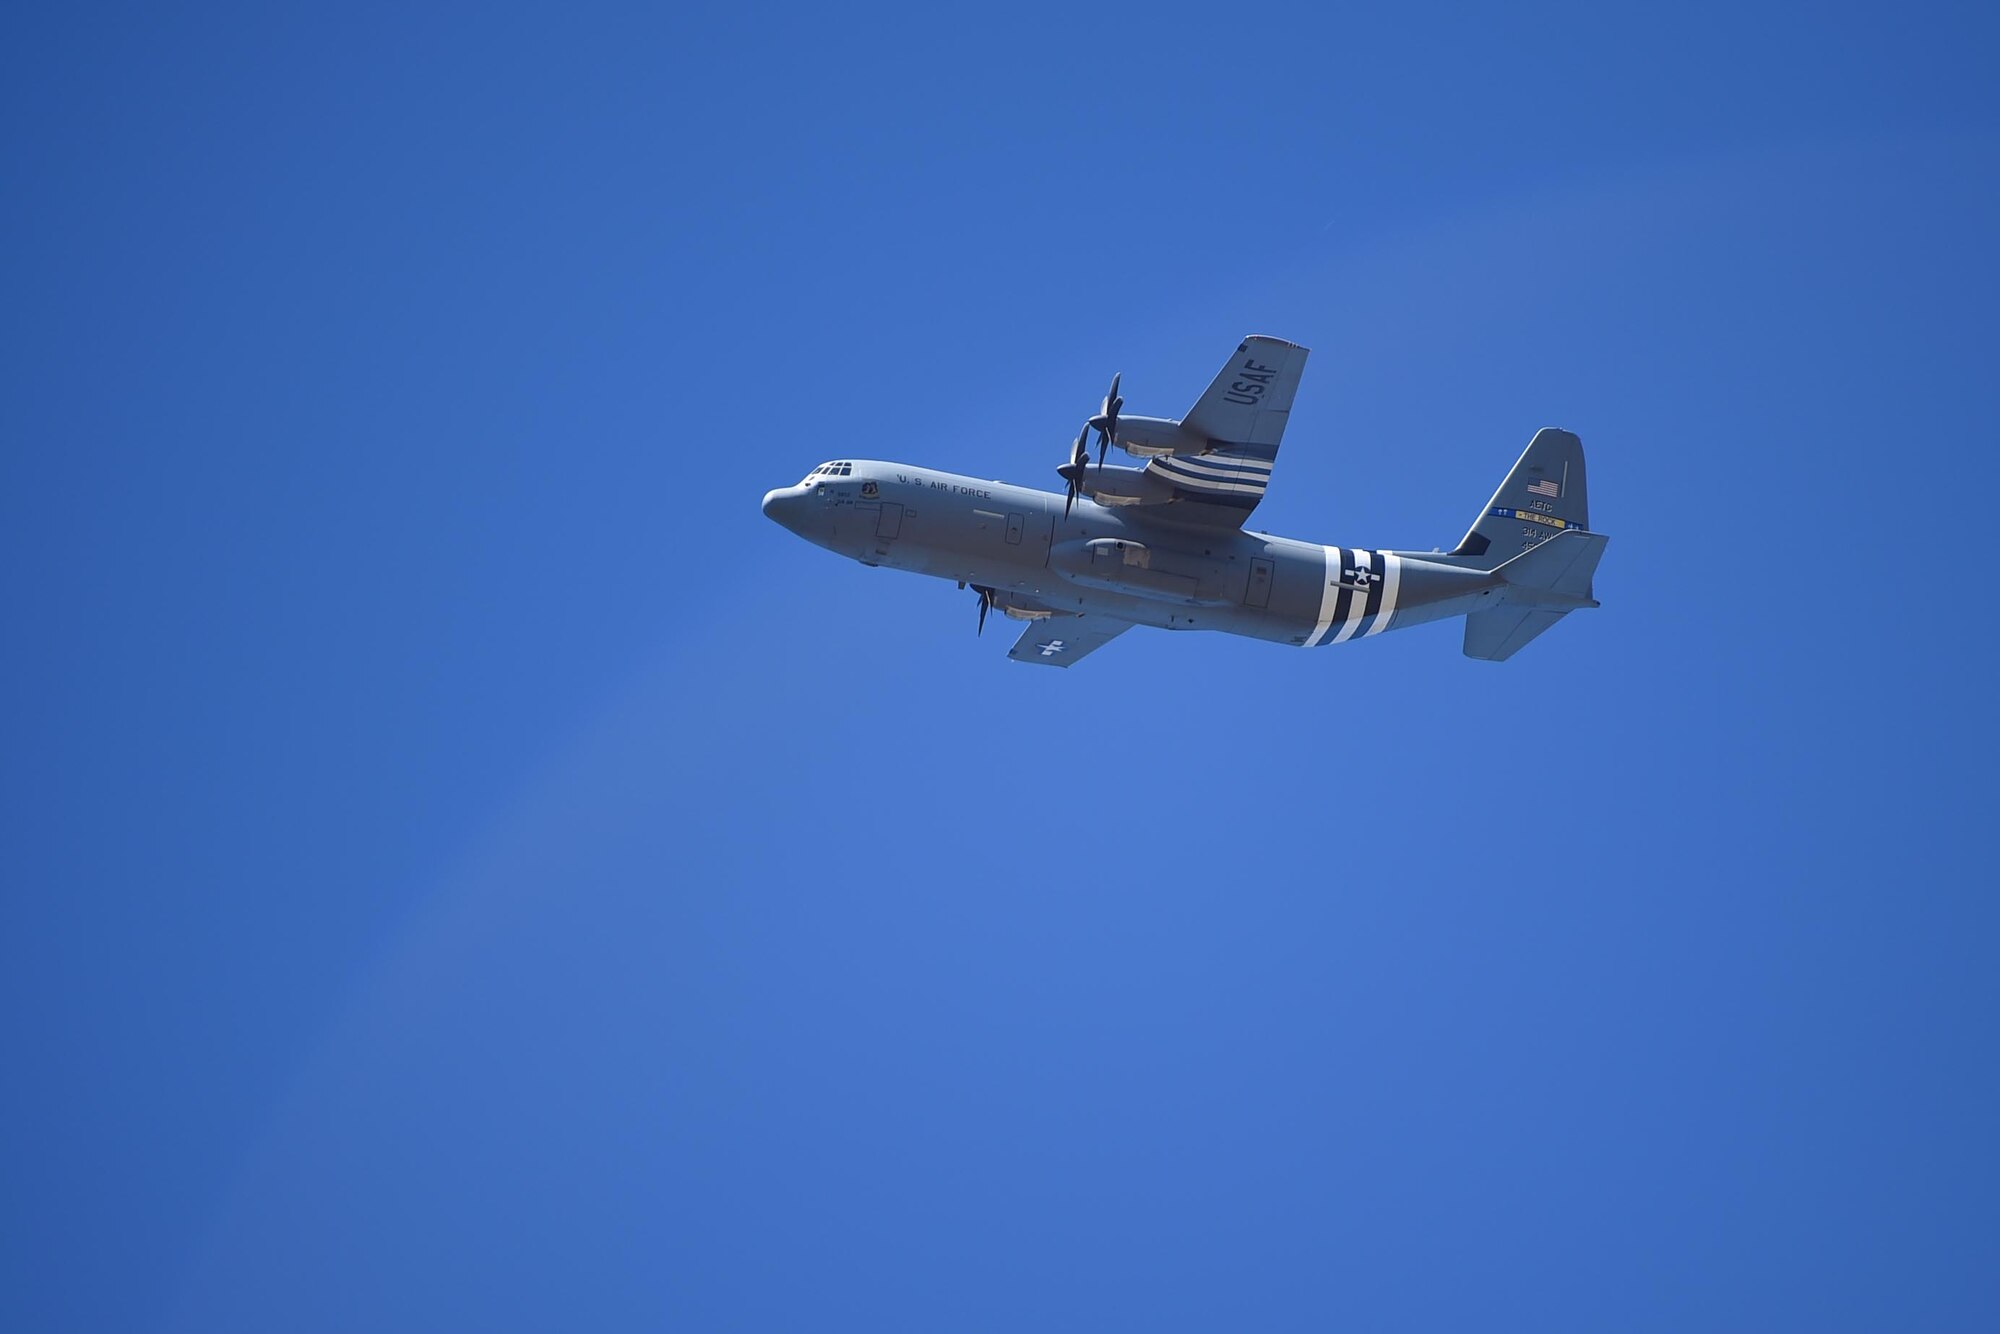 A C-130J flies overhead.